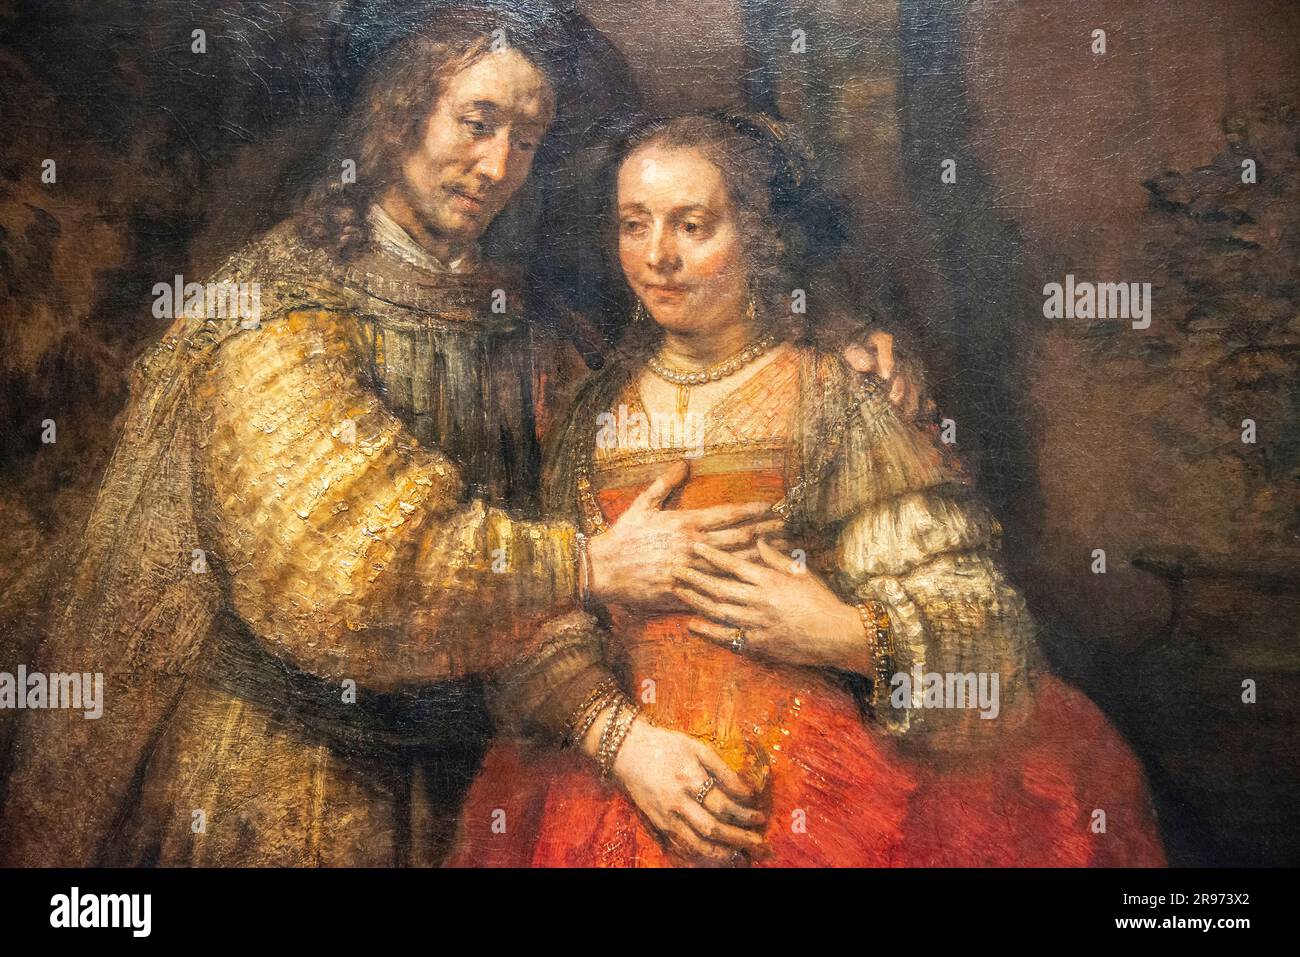 La pintura de Rembrandt llamó a la novia judía porque un padre judío le otorgó un collar a su hija el día de su boda. En el Rejksmuseum. Foto de stock